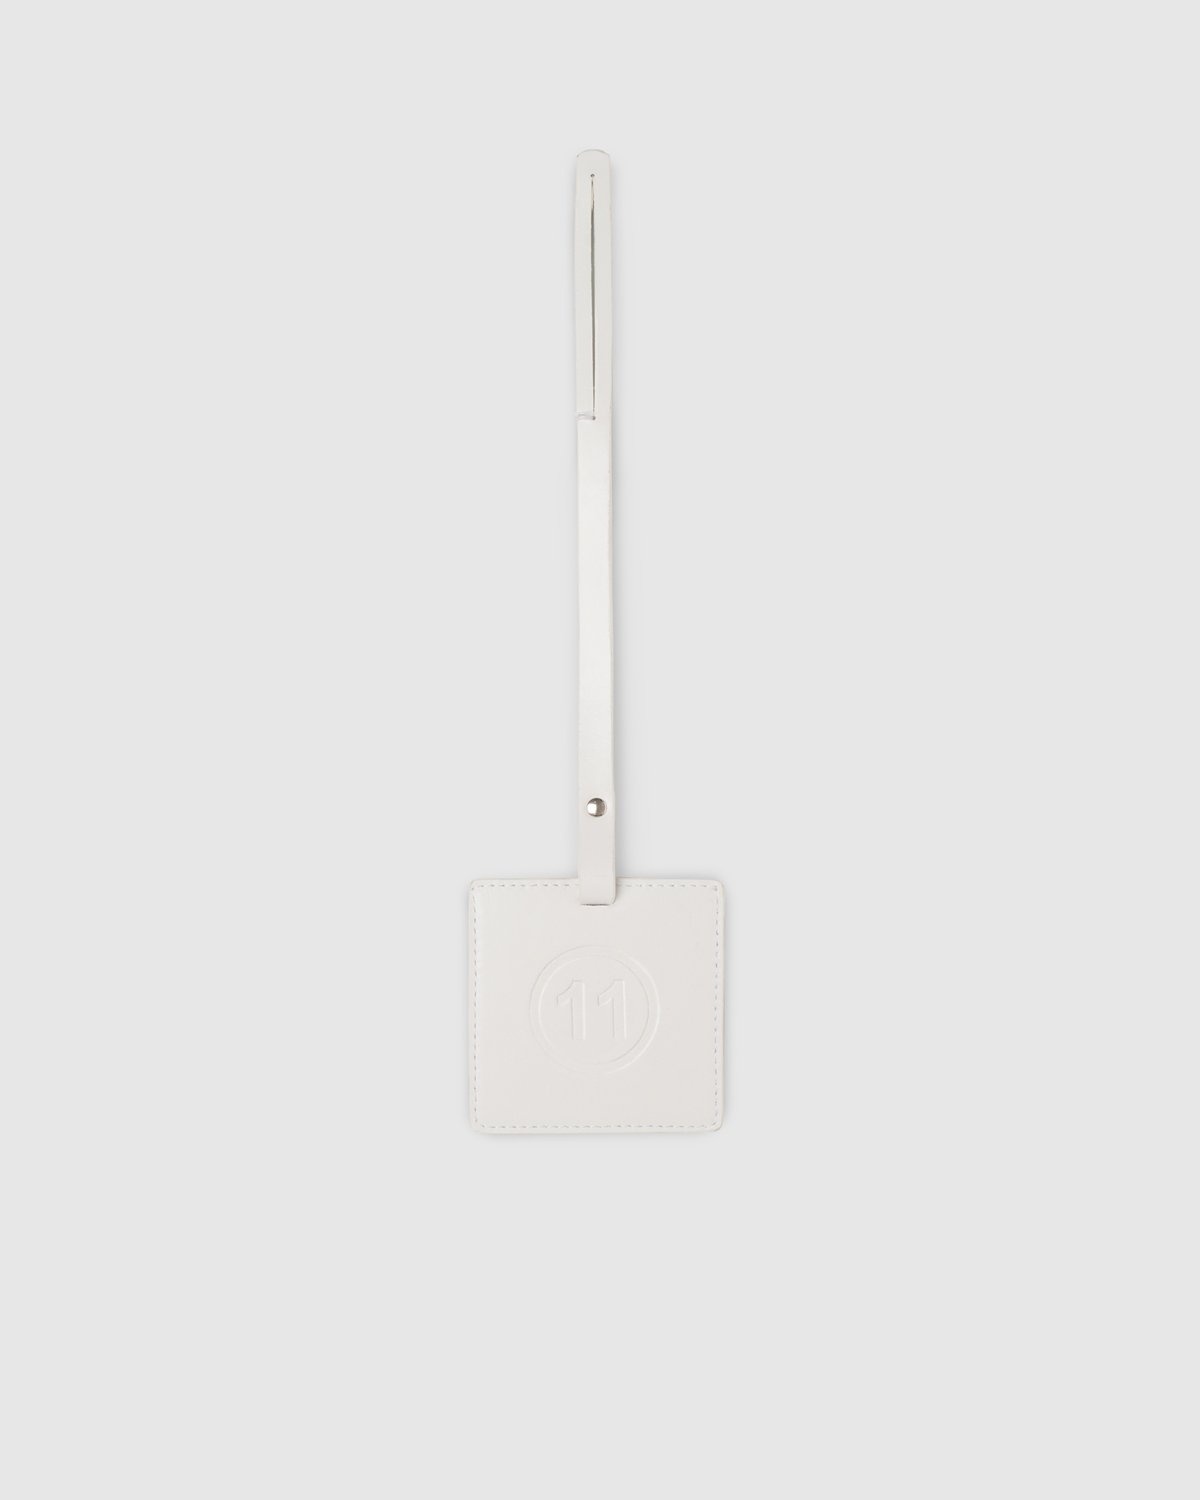 Maison Margiela – Logo Tag - Keychains - White - Image 1